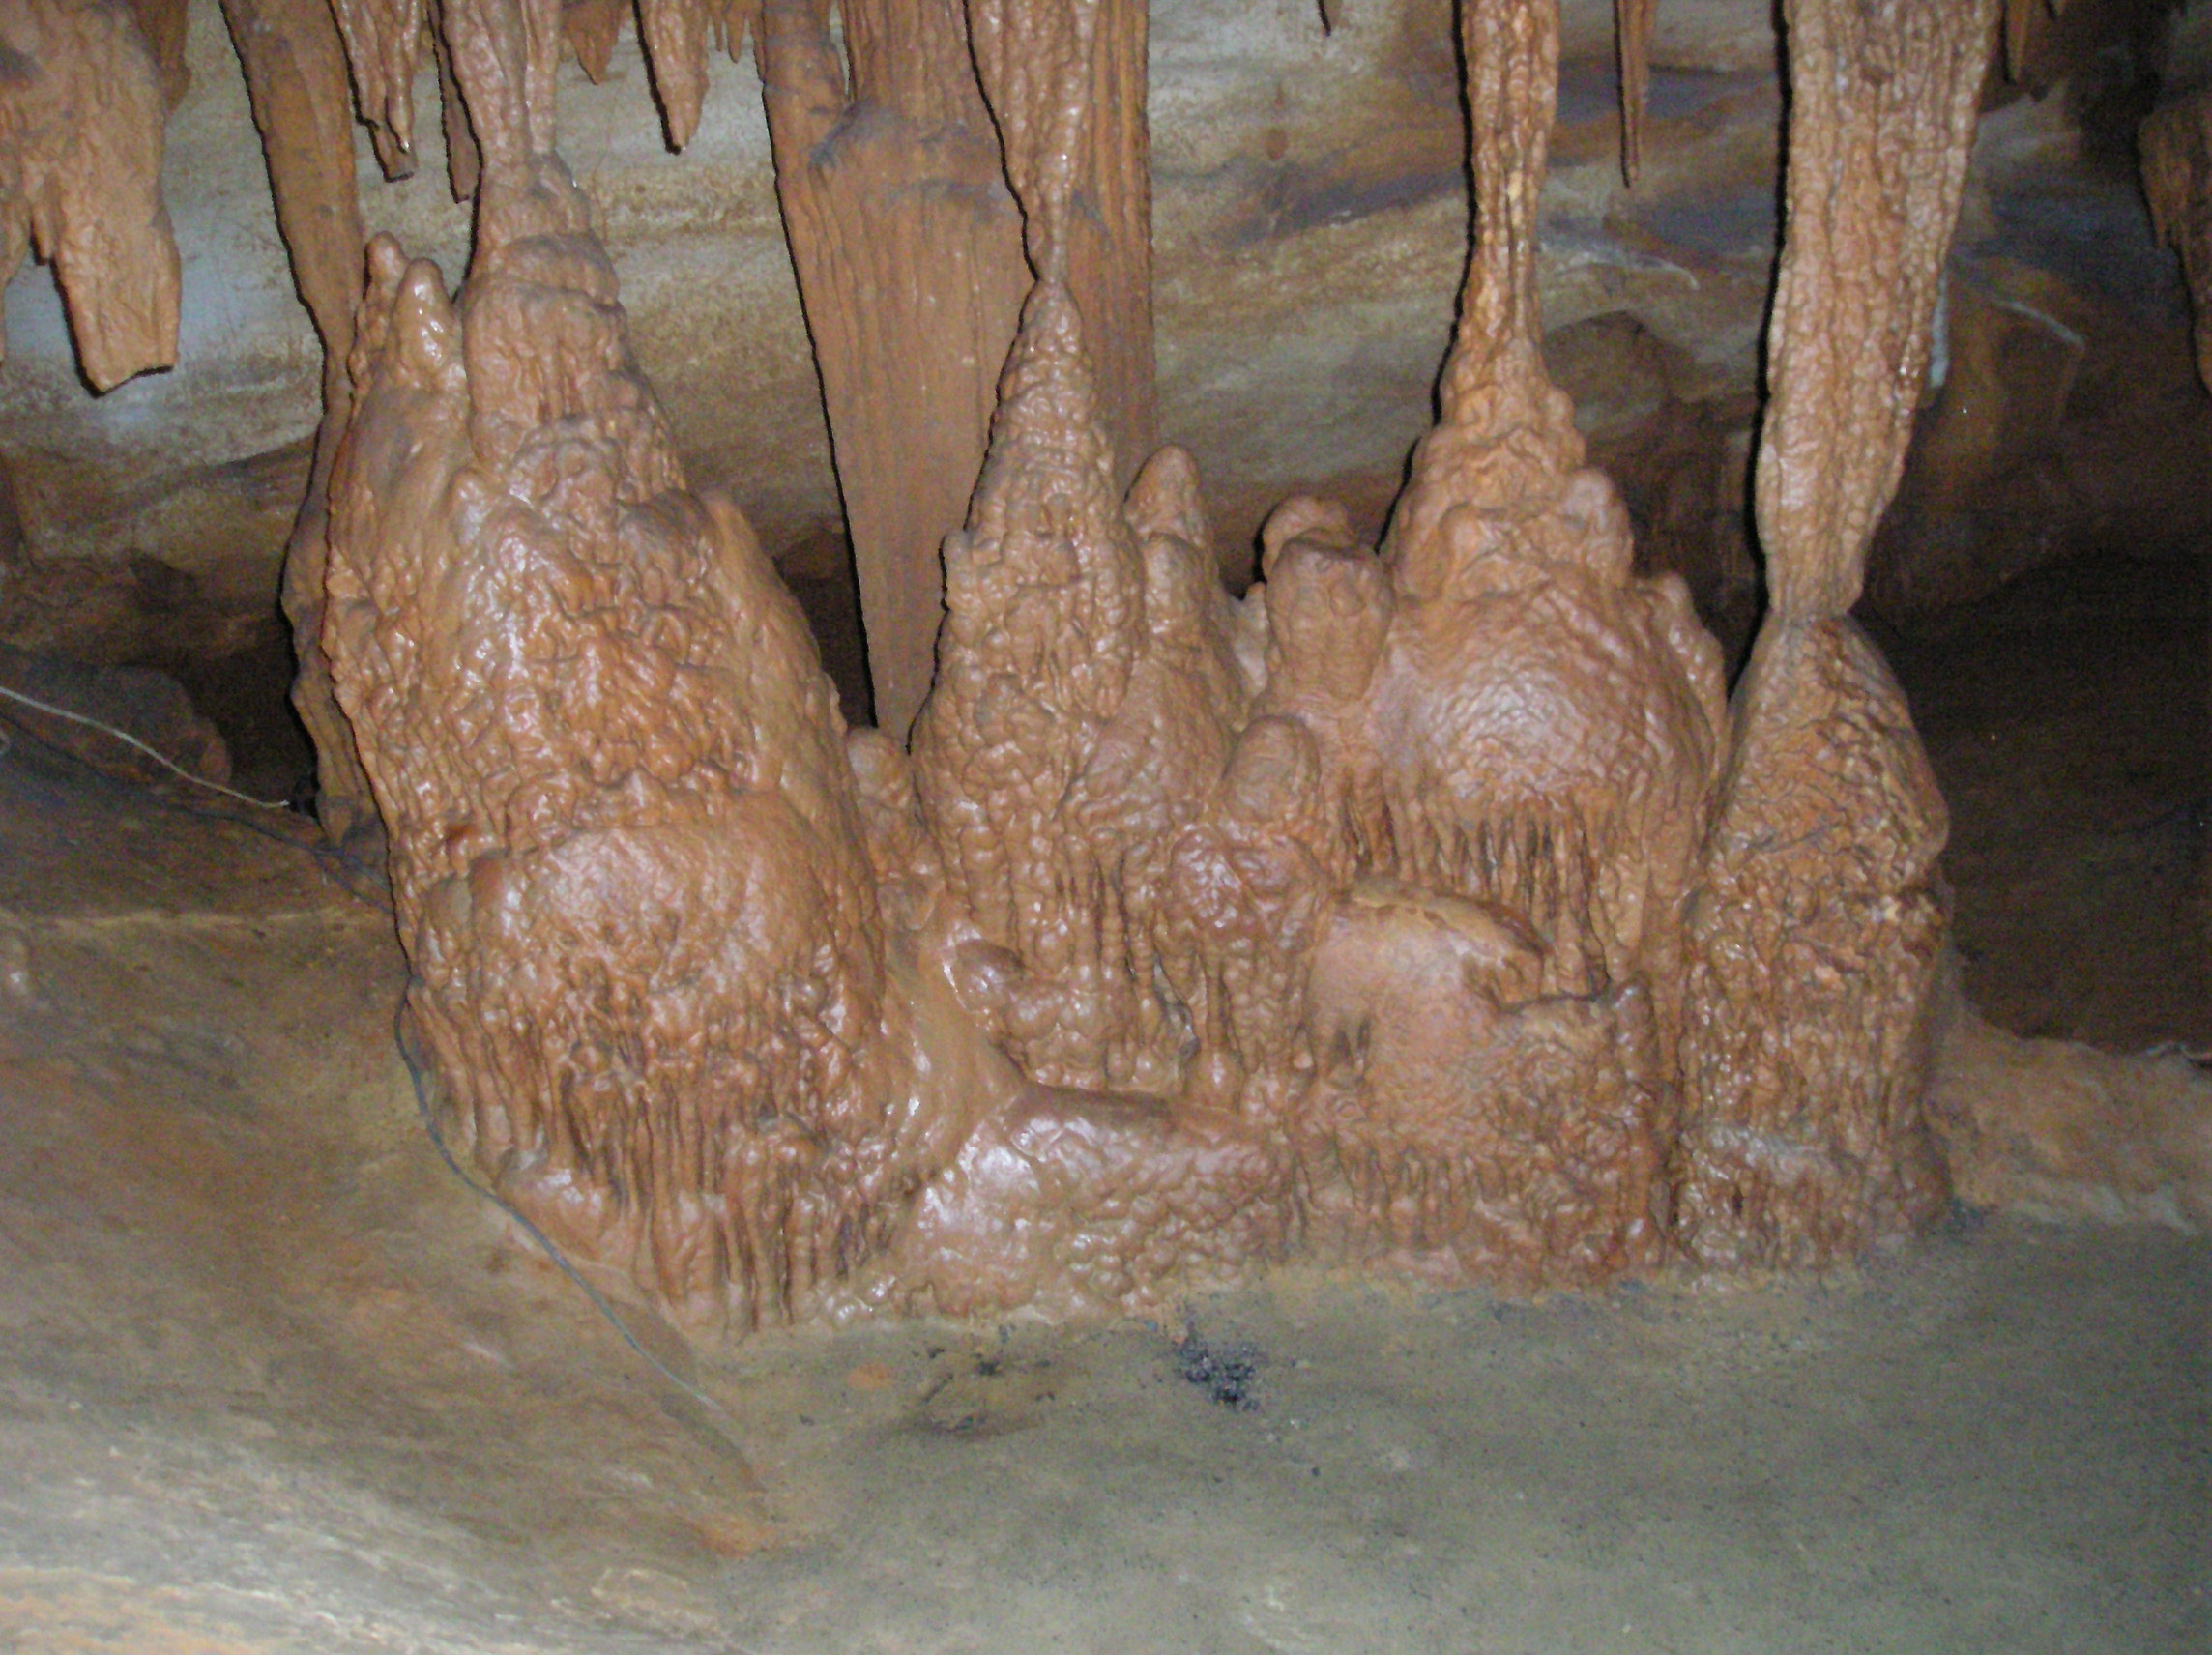 An Underground Adventure at Shenandoah Caverns